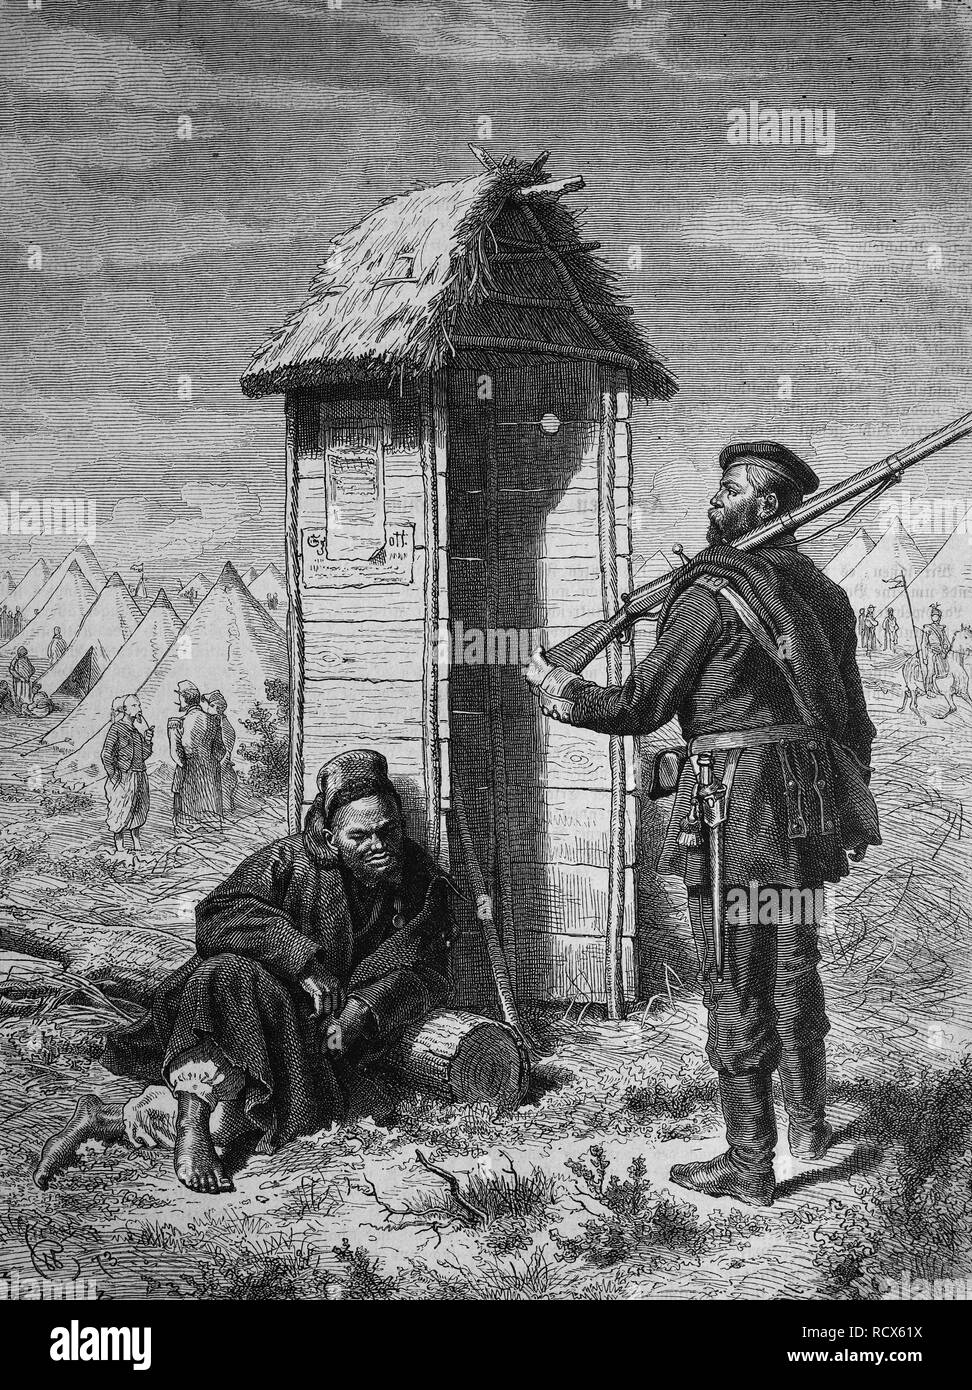 Camp militaire turc en dehors de Vienne, Autriche, gravure sur bois, 1880 c Banque D'Images